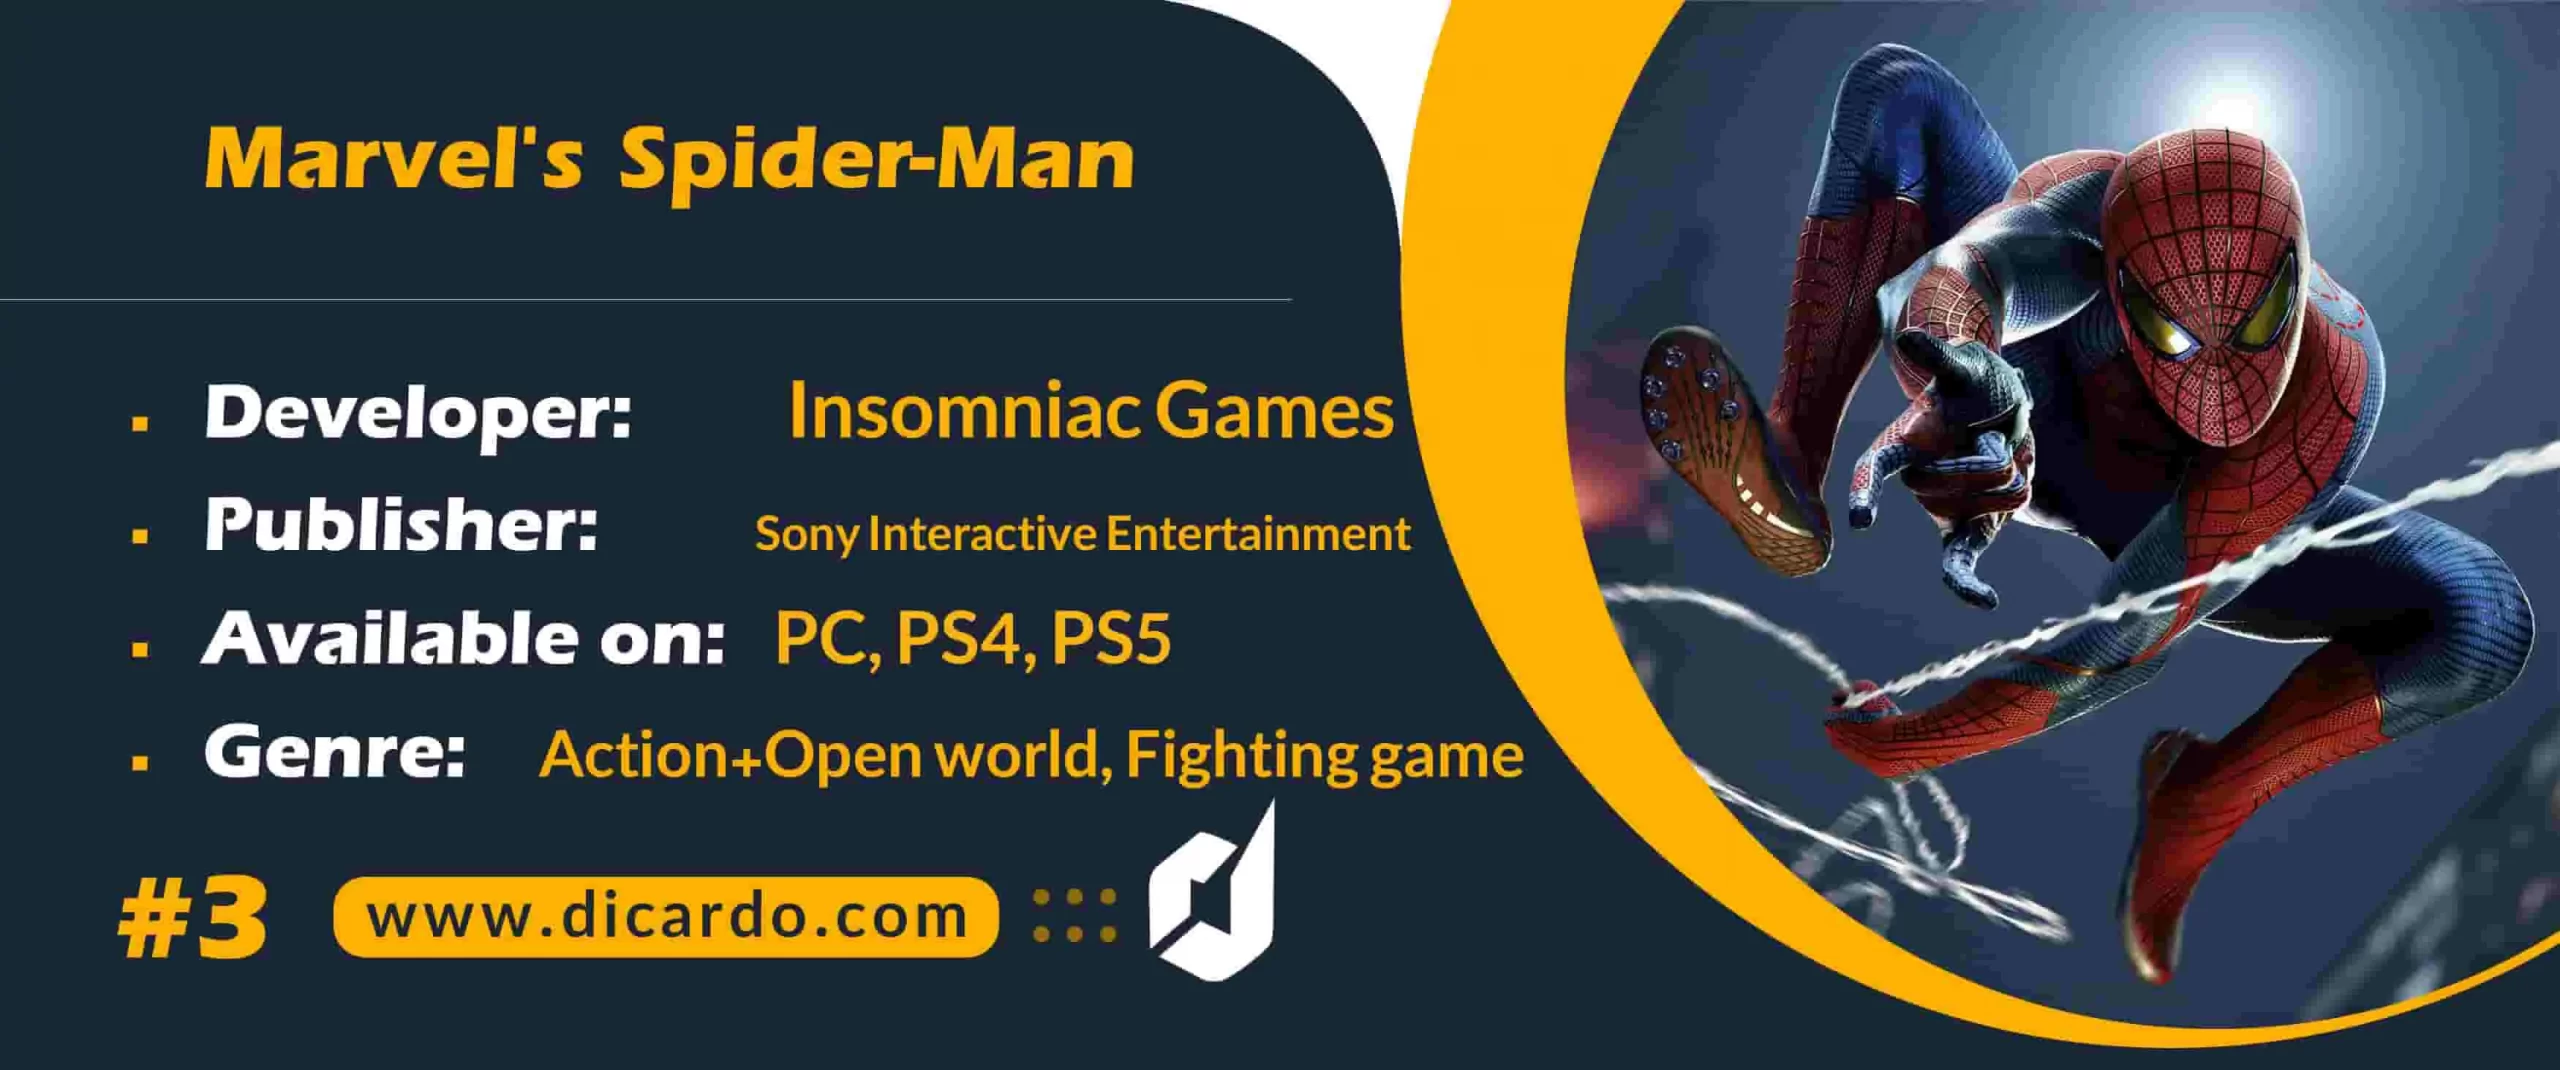 #3 مارولز اسپایدرمن Marvel’s Spider-Man از بهترین بازیهای اکشن برای هواداران مرد عنکبوتی